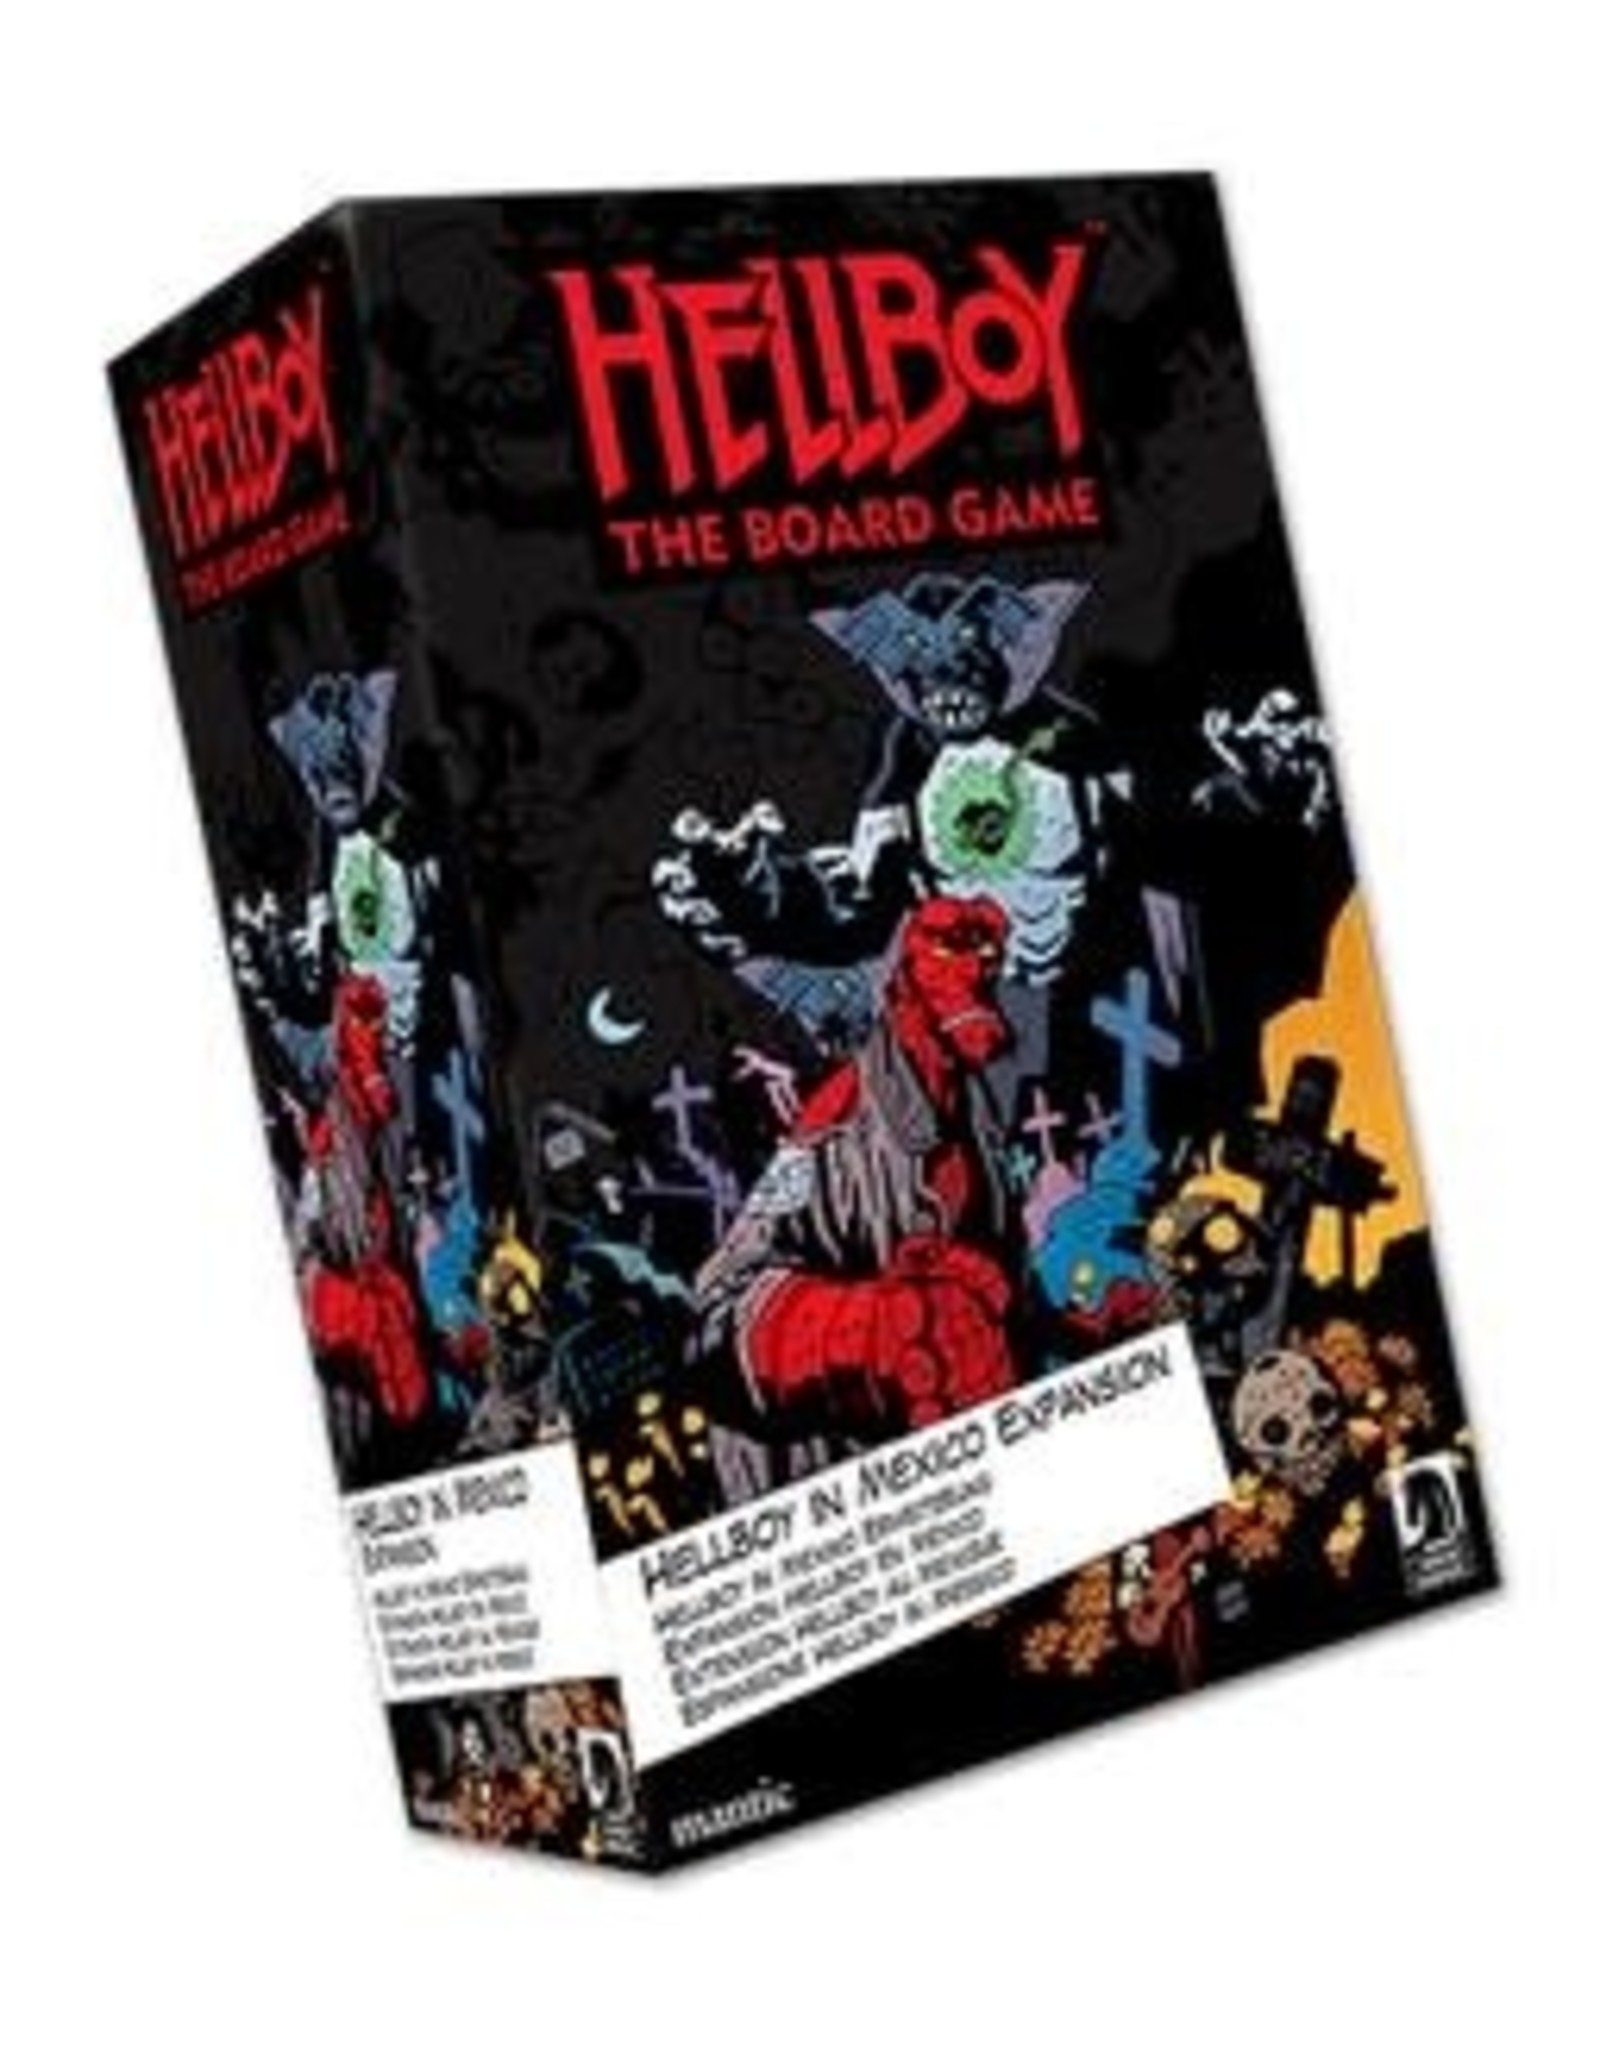 Hellboy: Hellboy in Mexico